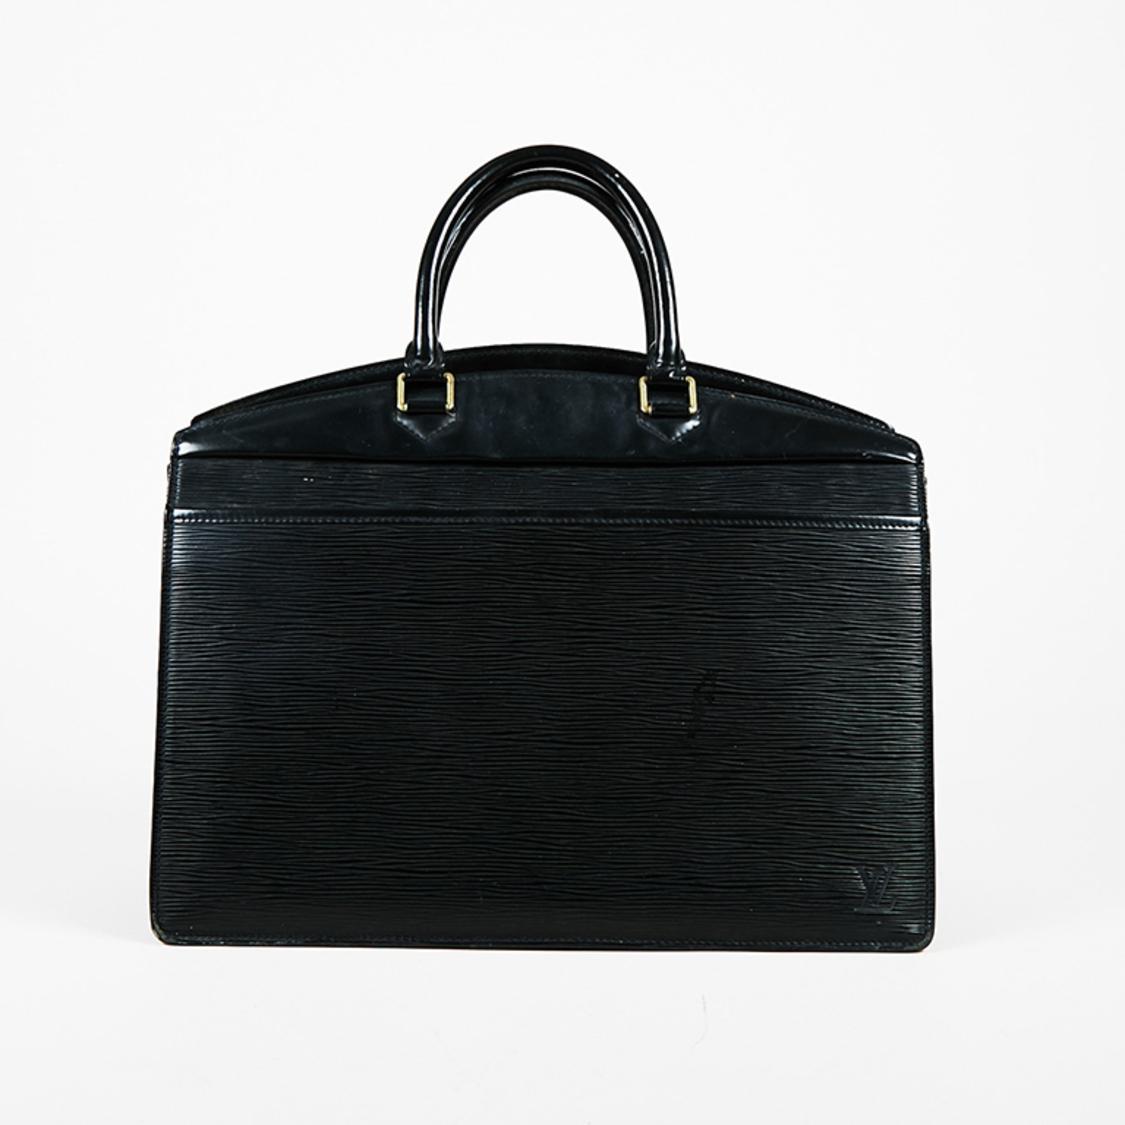 Lyst - Louis Vuitton Noir Epi Leather Riviera Bag in Black